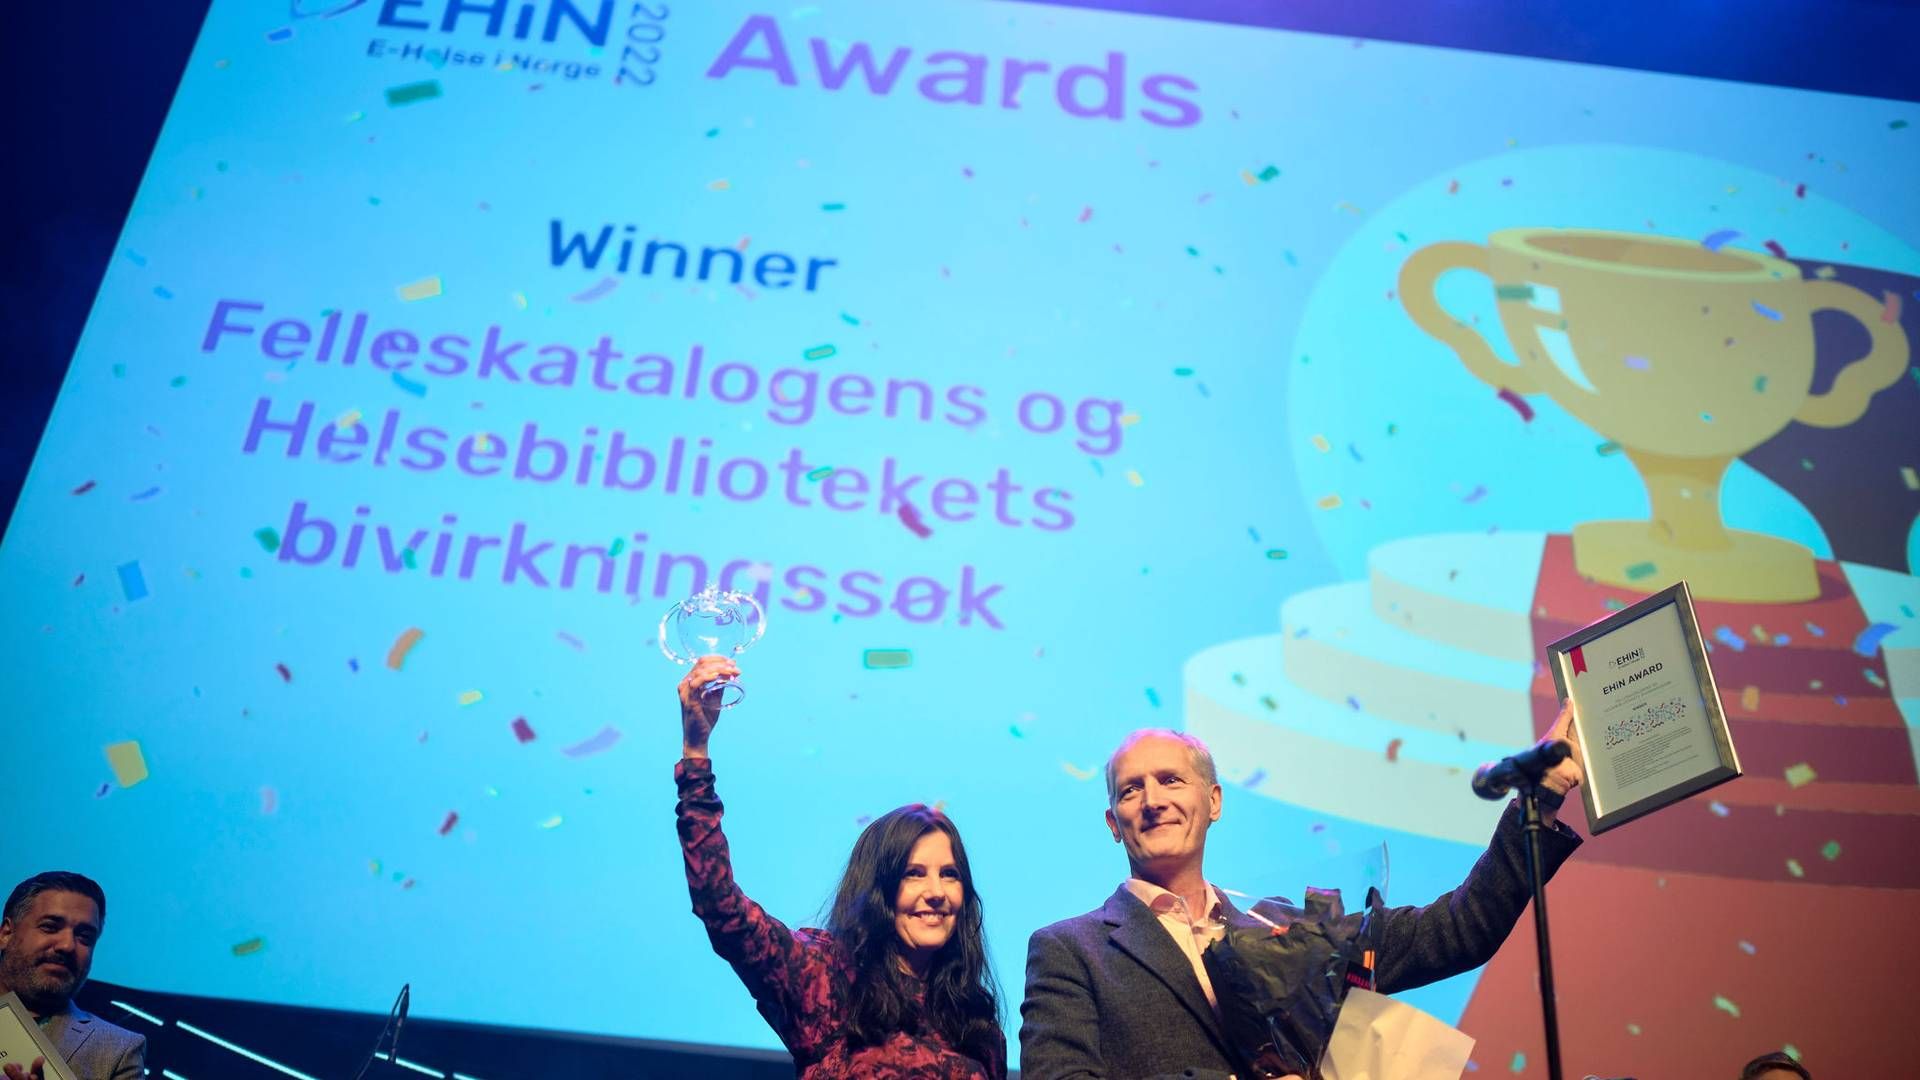 VANT: Sammen med Helsebiblioteket ble Felleskatalogen AS tildelt e-helseprisen EHIN Awards 2022 for sitt bivirkningssøk. | Foto: Ard Jongsma